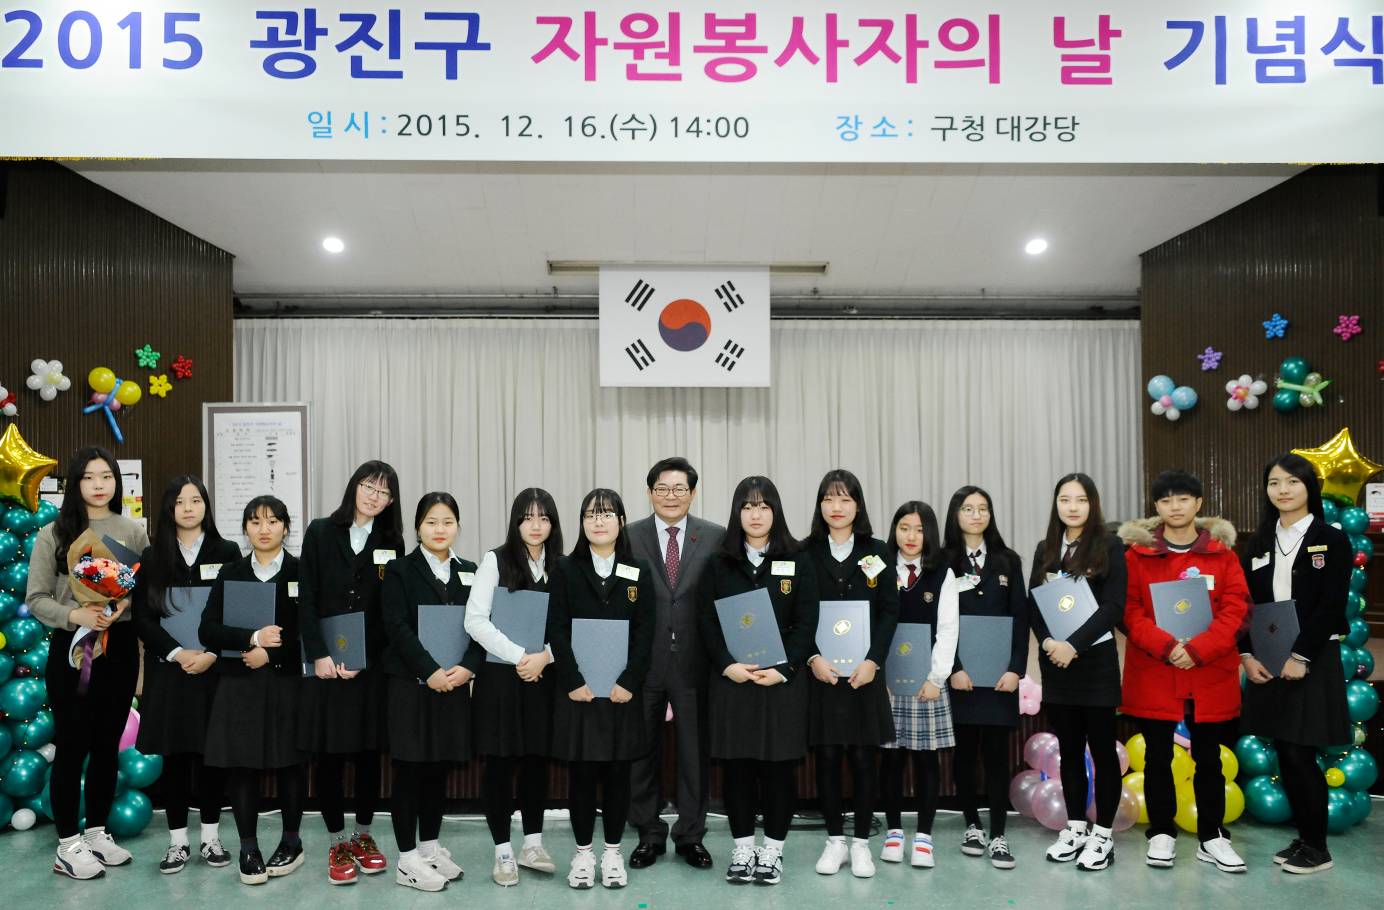 20151216-2015 자원봉사자의 날 기념 행사 개최 2차